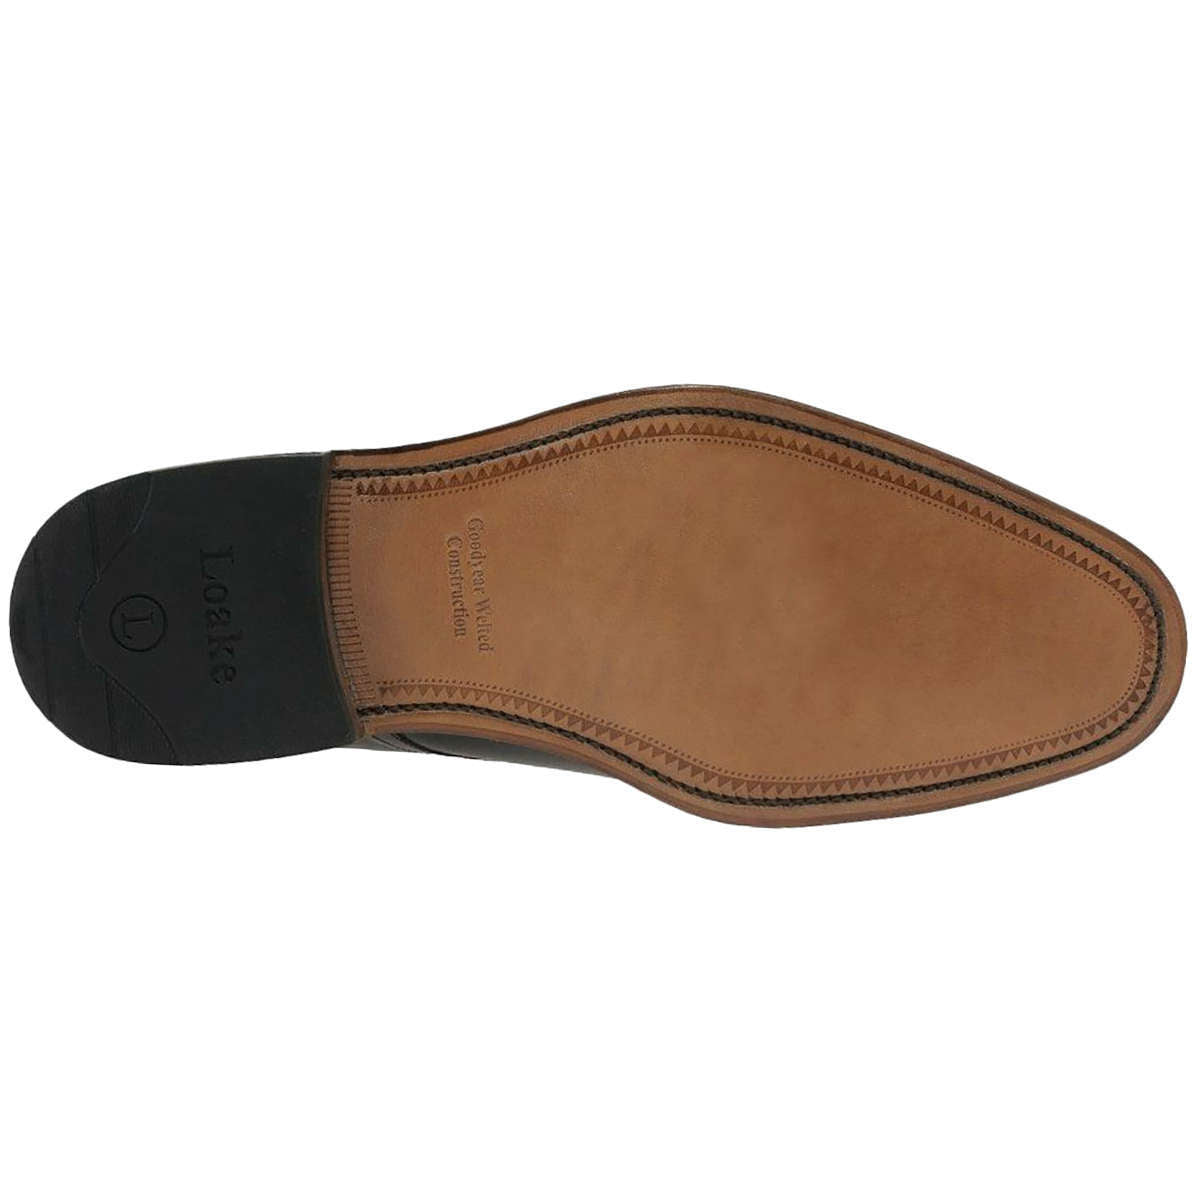 Loake Drake Polished Leather Men's Formal Shoes#color_black